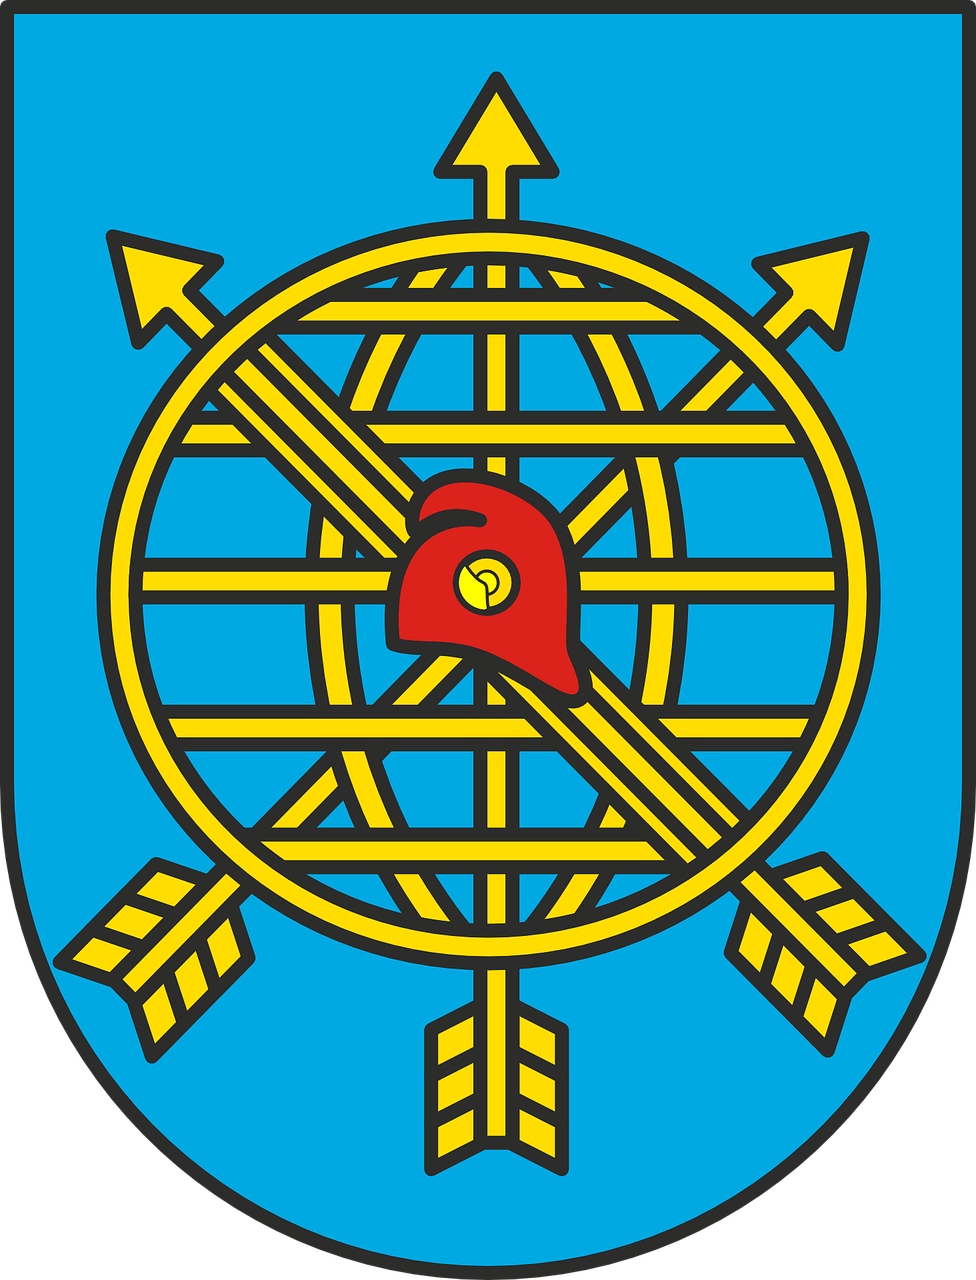 rio de jainero coat of arms symbol free photo